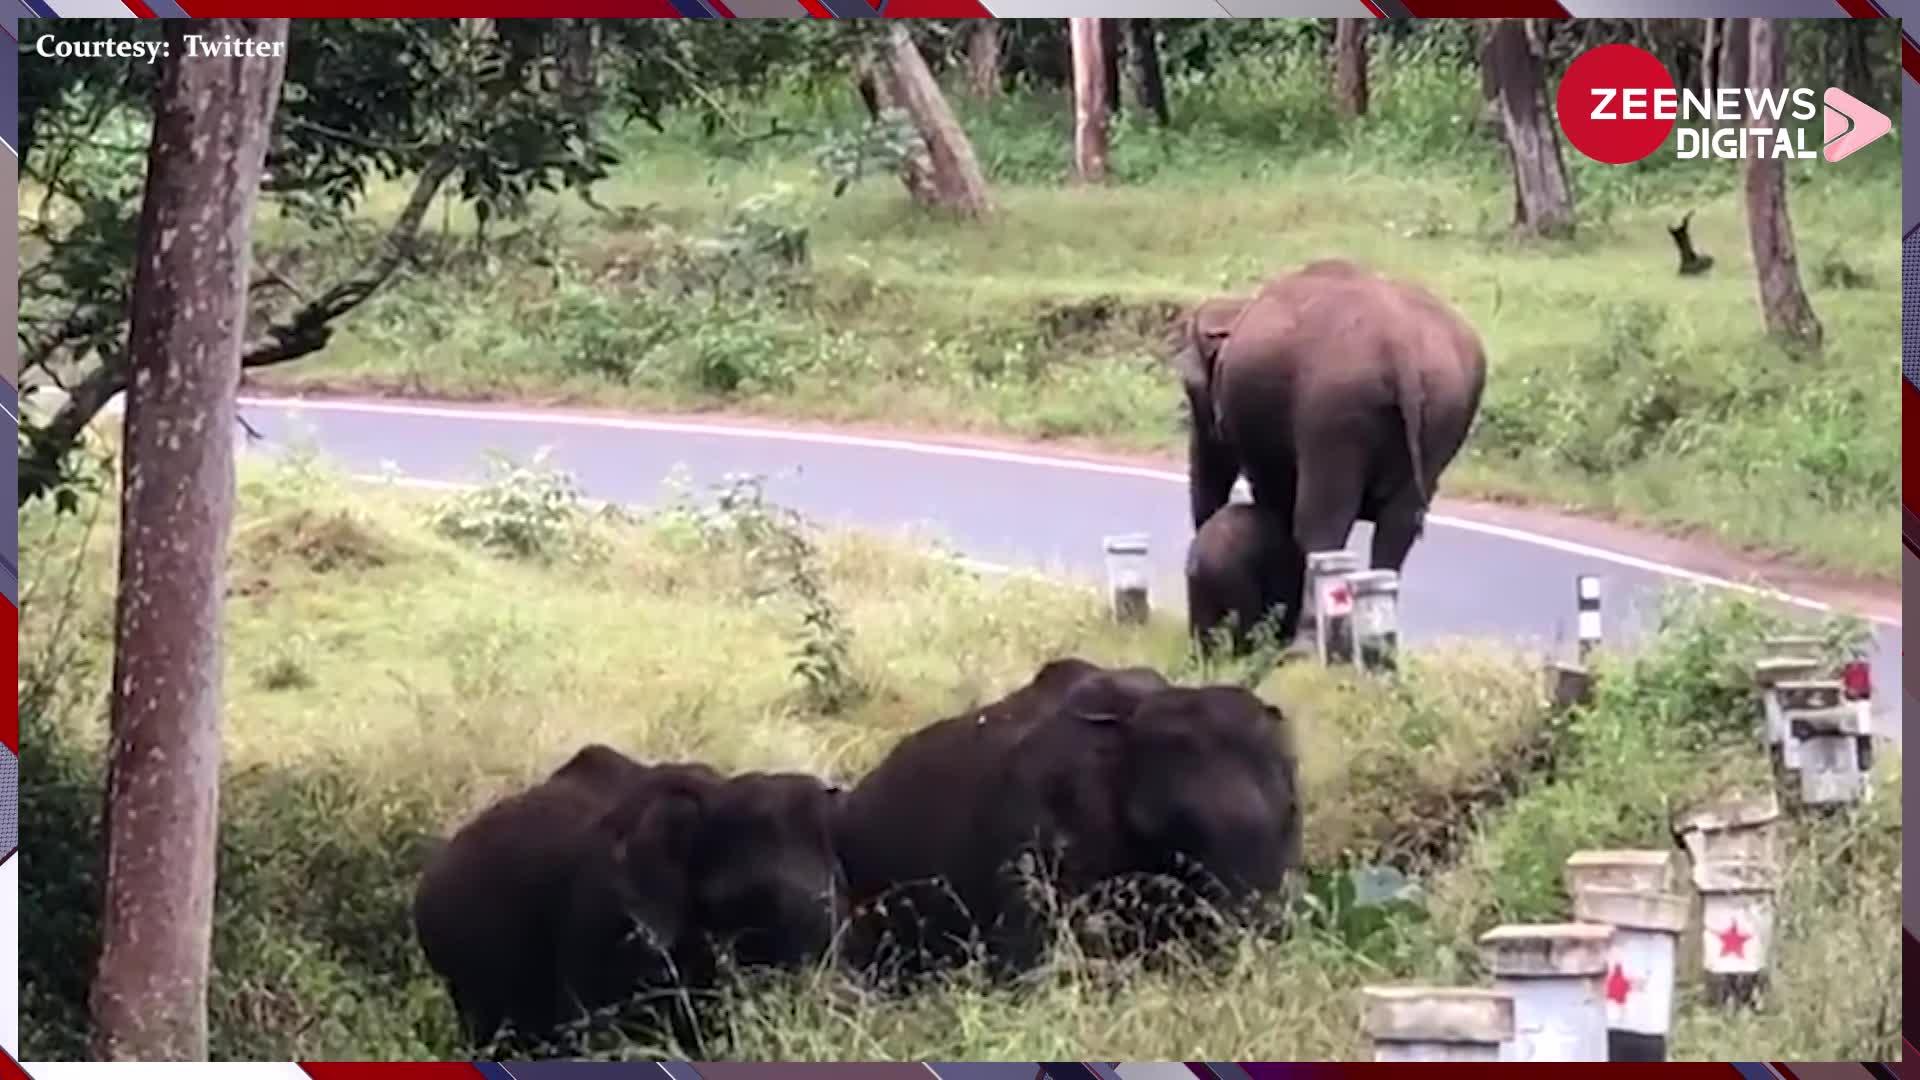 Elephant Video: अपने बच्चे को रोड पार करवा रही थी हथनी तभी किसी ने बना डाला वीडियो! देख लोगों ने कहा-'दिल जीत लिया'